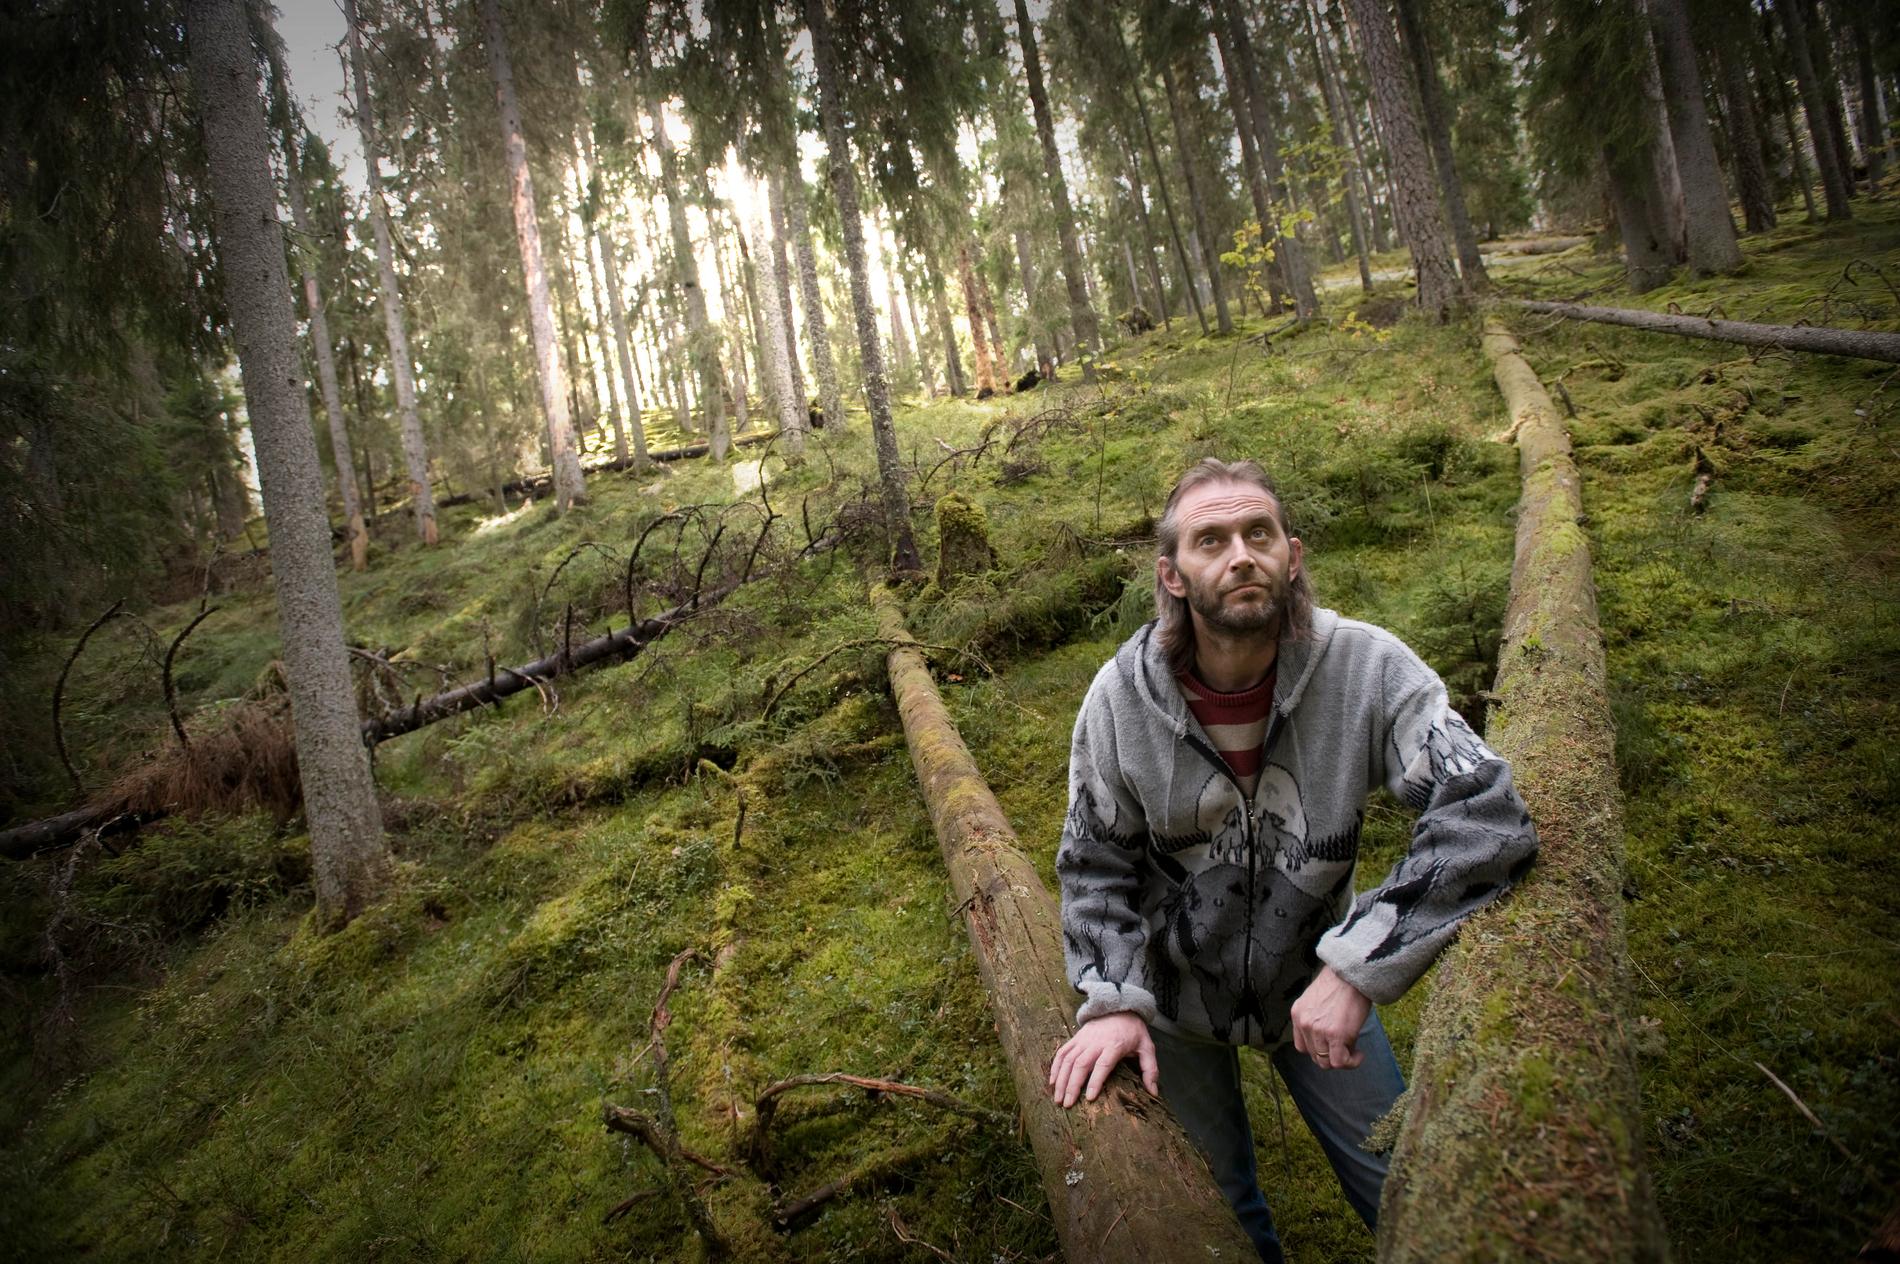 Naturfotografen Terje Hellesö blev påkommen med att ha manipulerat sina bilder. Han flydde till skogs, hämtades, kördes till psykakuten och stängdes ute från sin egen festival.